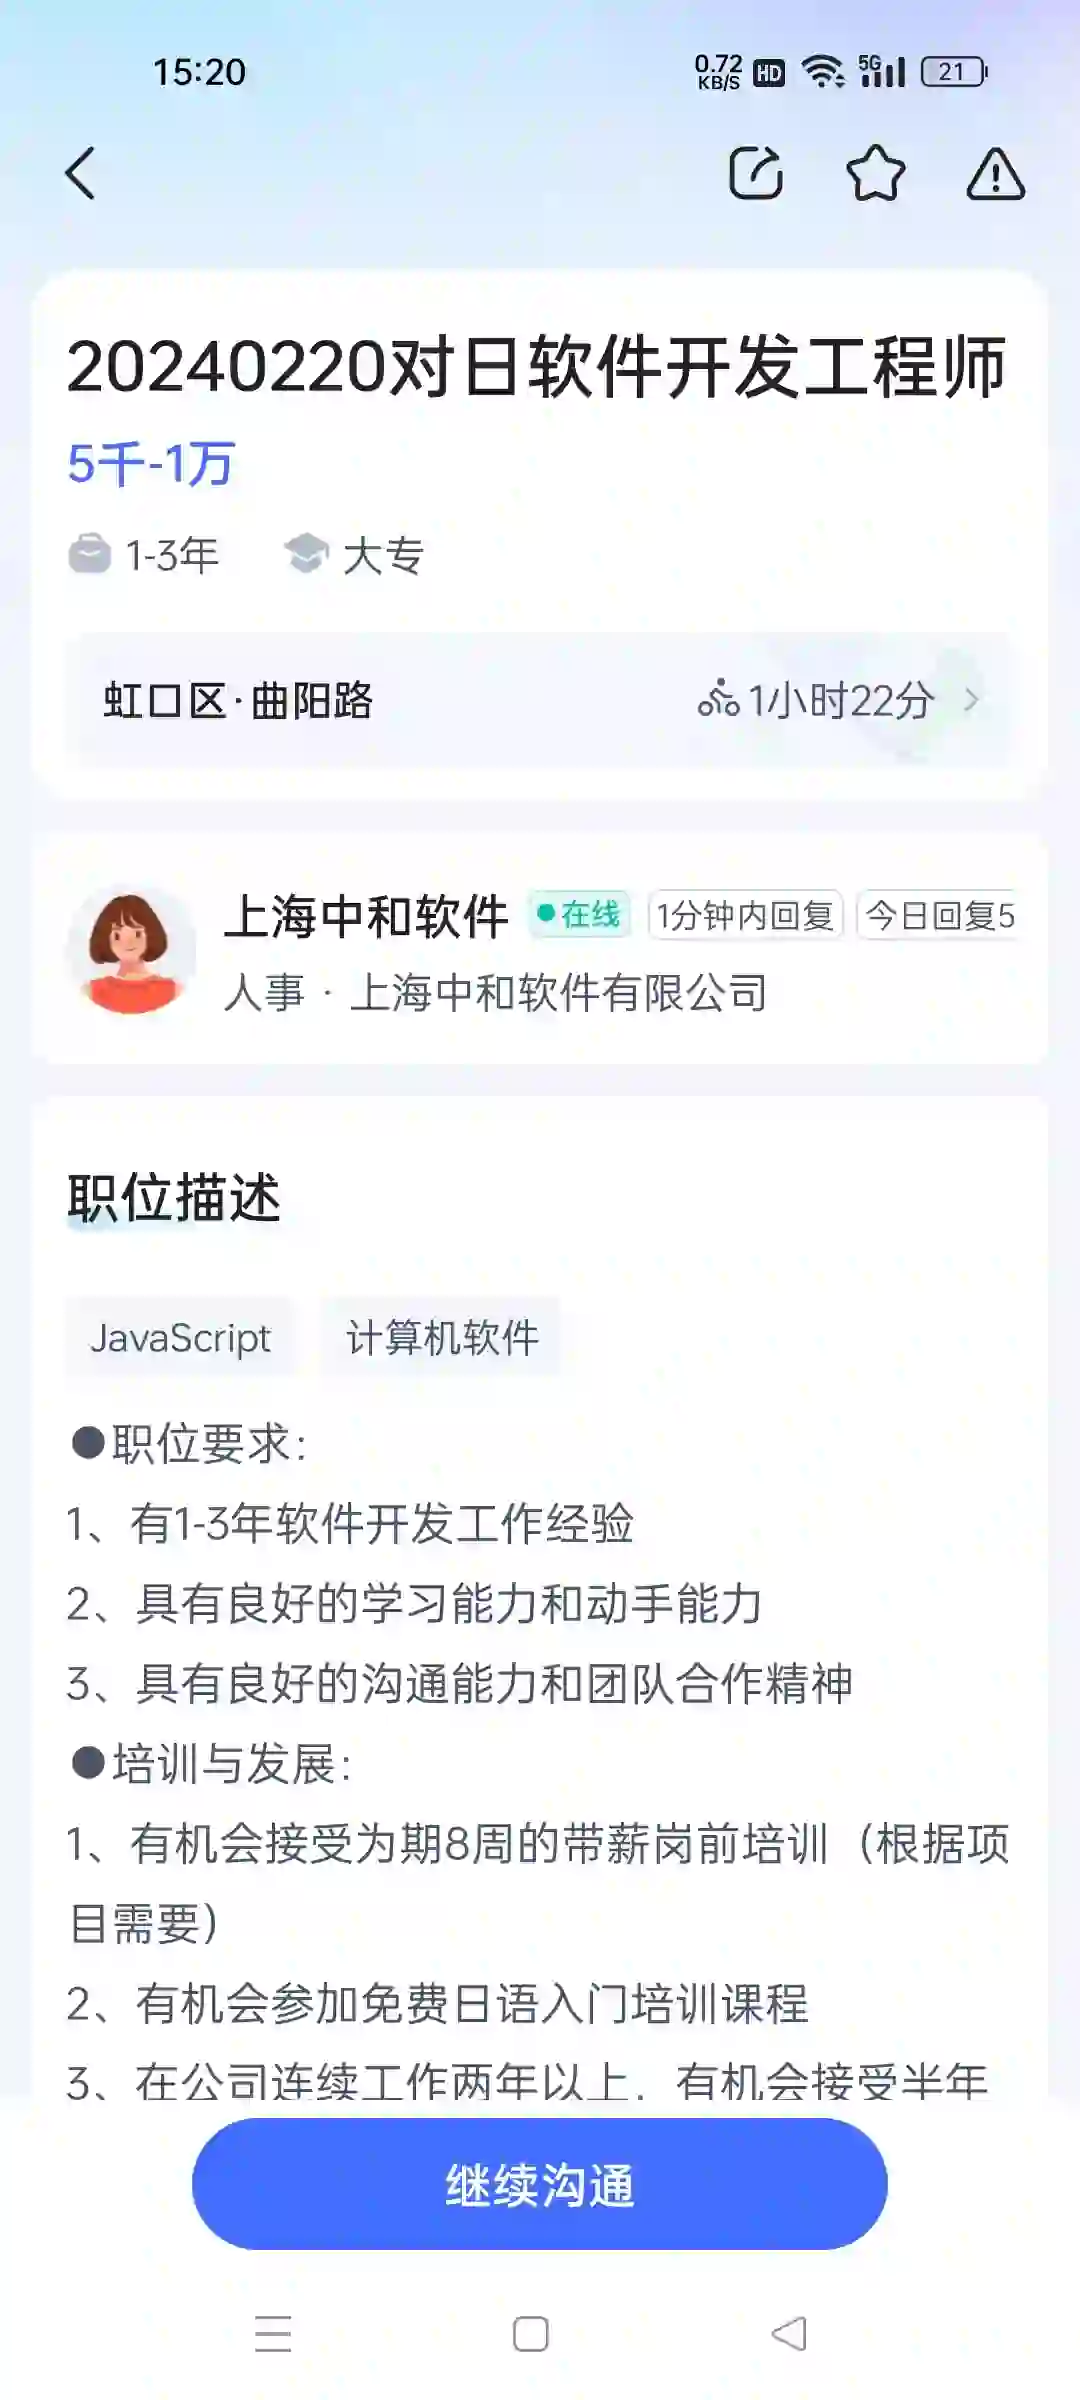 上海中和软件有限公司招对日开发工程师虚假